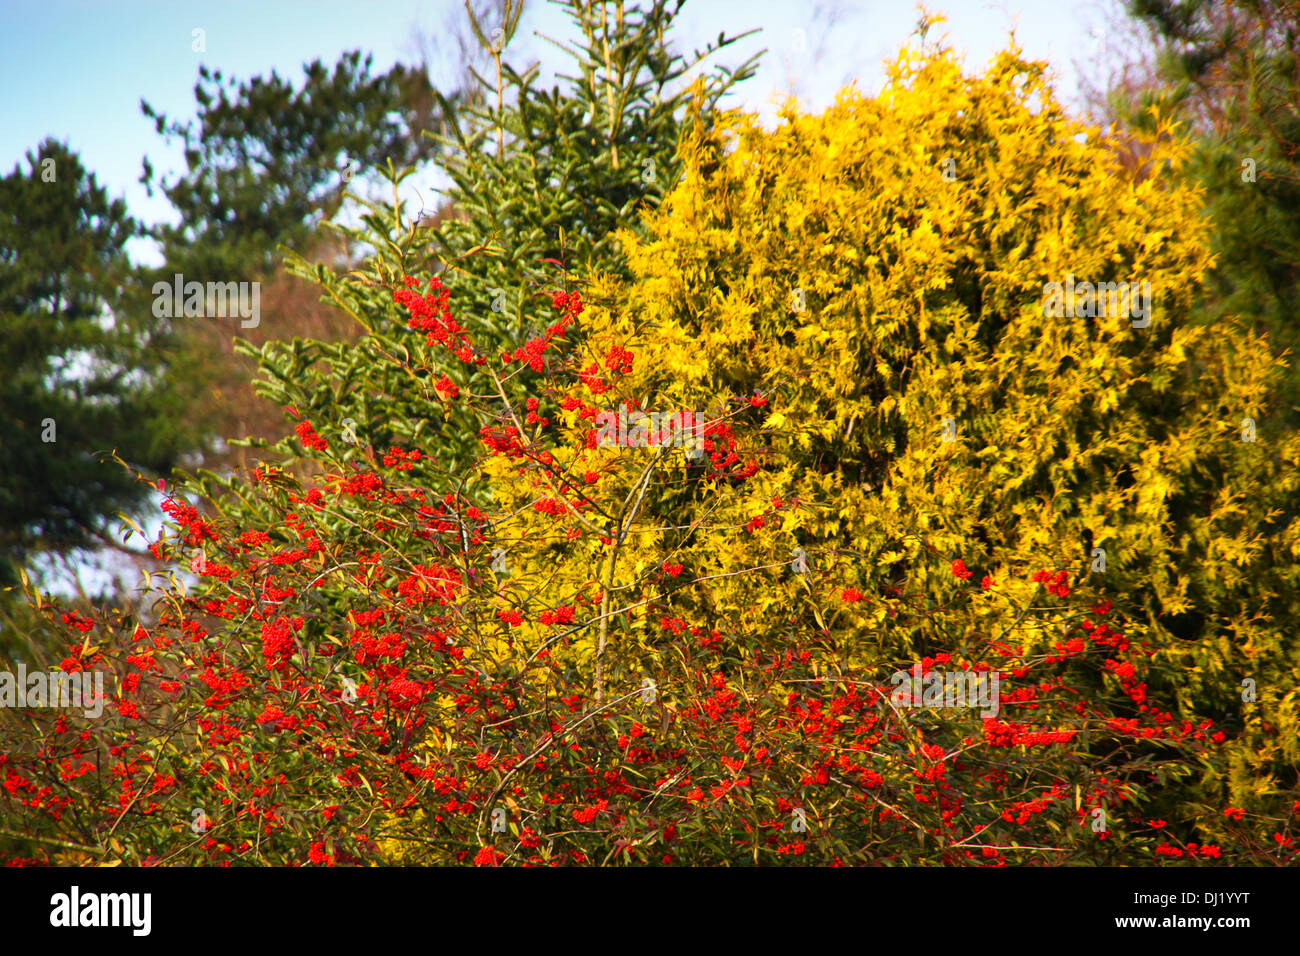 Schottlands, Glasgow, Vereinigtes Königreich. 19. November 2013. Herbstfärbung Colzium Park Schottlands. Bildnachweis: ALAN OLIVER/Alamy Live-Nachrichten Stockfoto